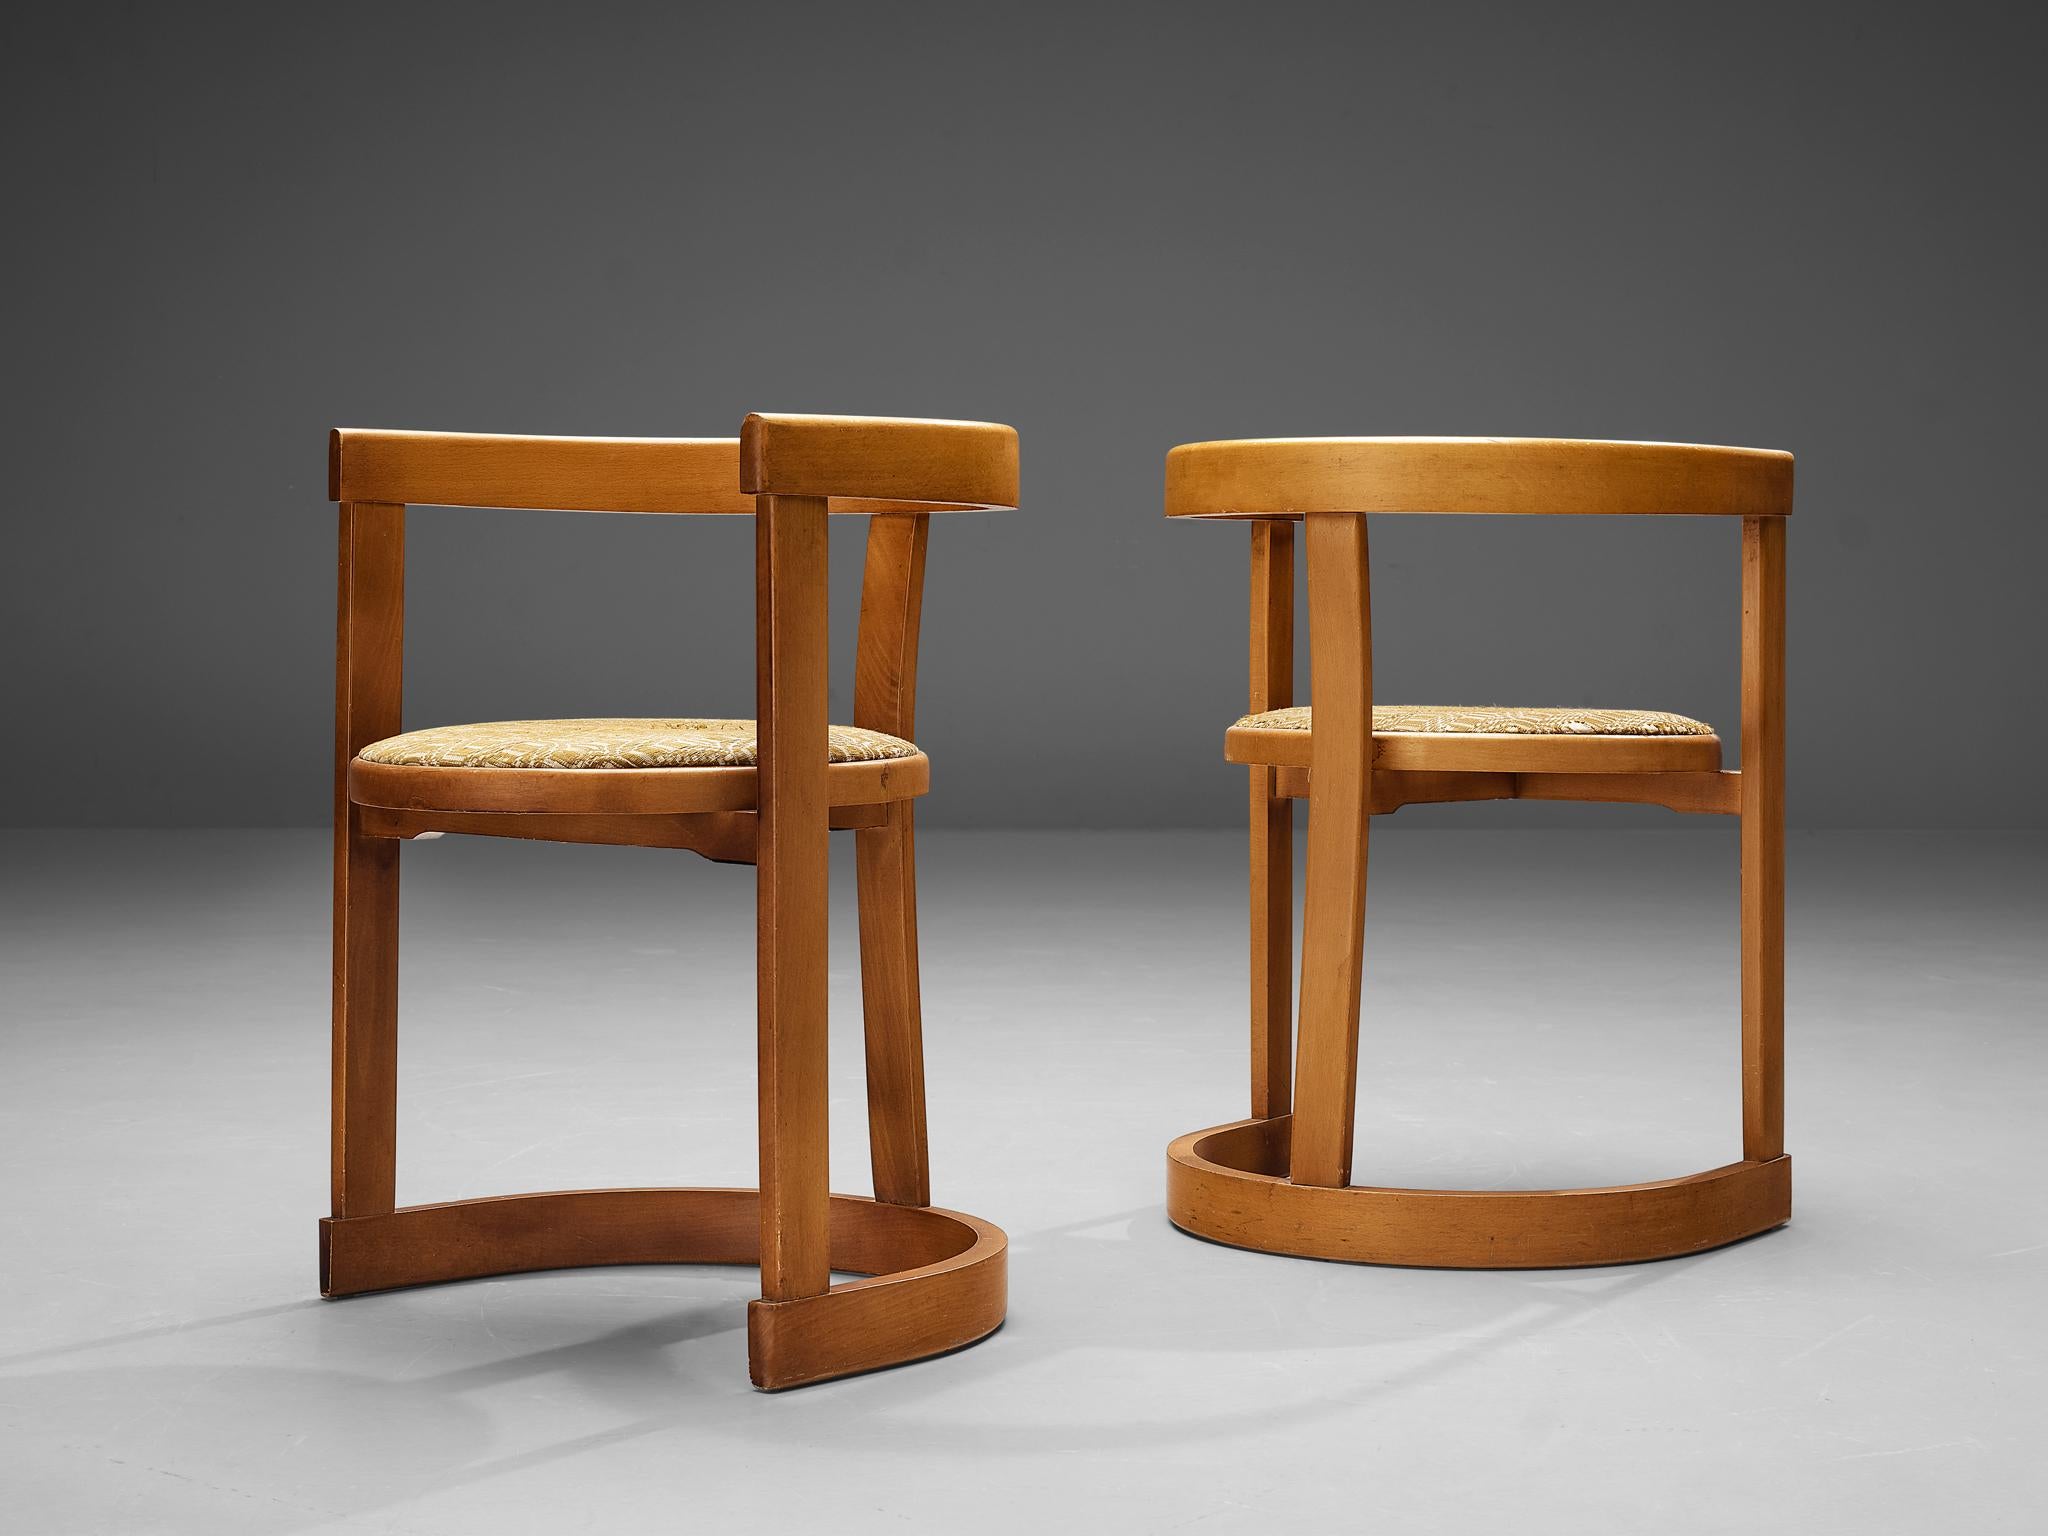 Paire de chaises de salle à manger, hêtre, tissu, Italie, années 1960

Tout dans cette paire de chaises est élégamment rond. Le dossier/accoudoir fait écho à la base dans la même forme semi-circulaire et ouverte. Trois lattes verticales, dont celle